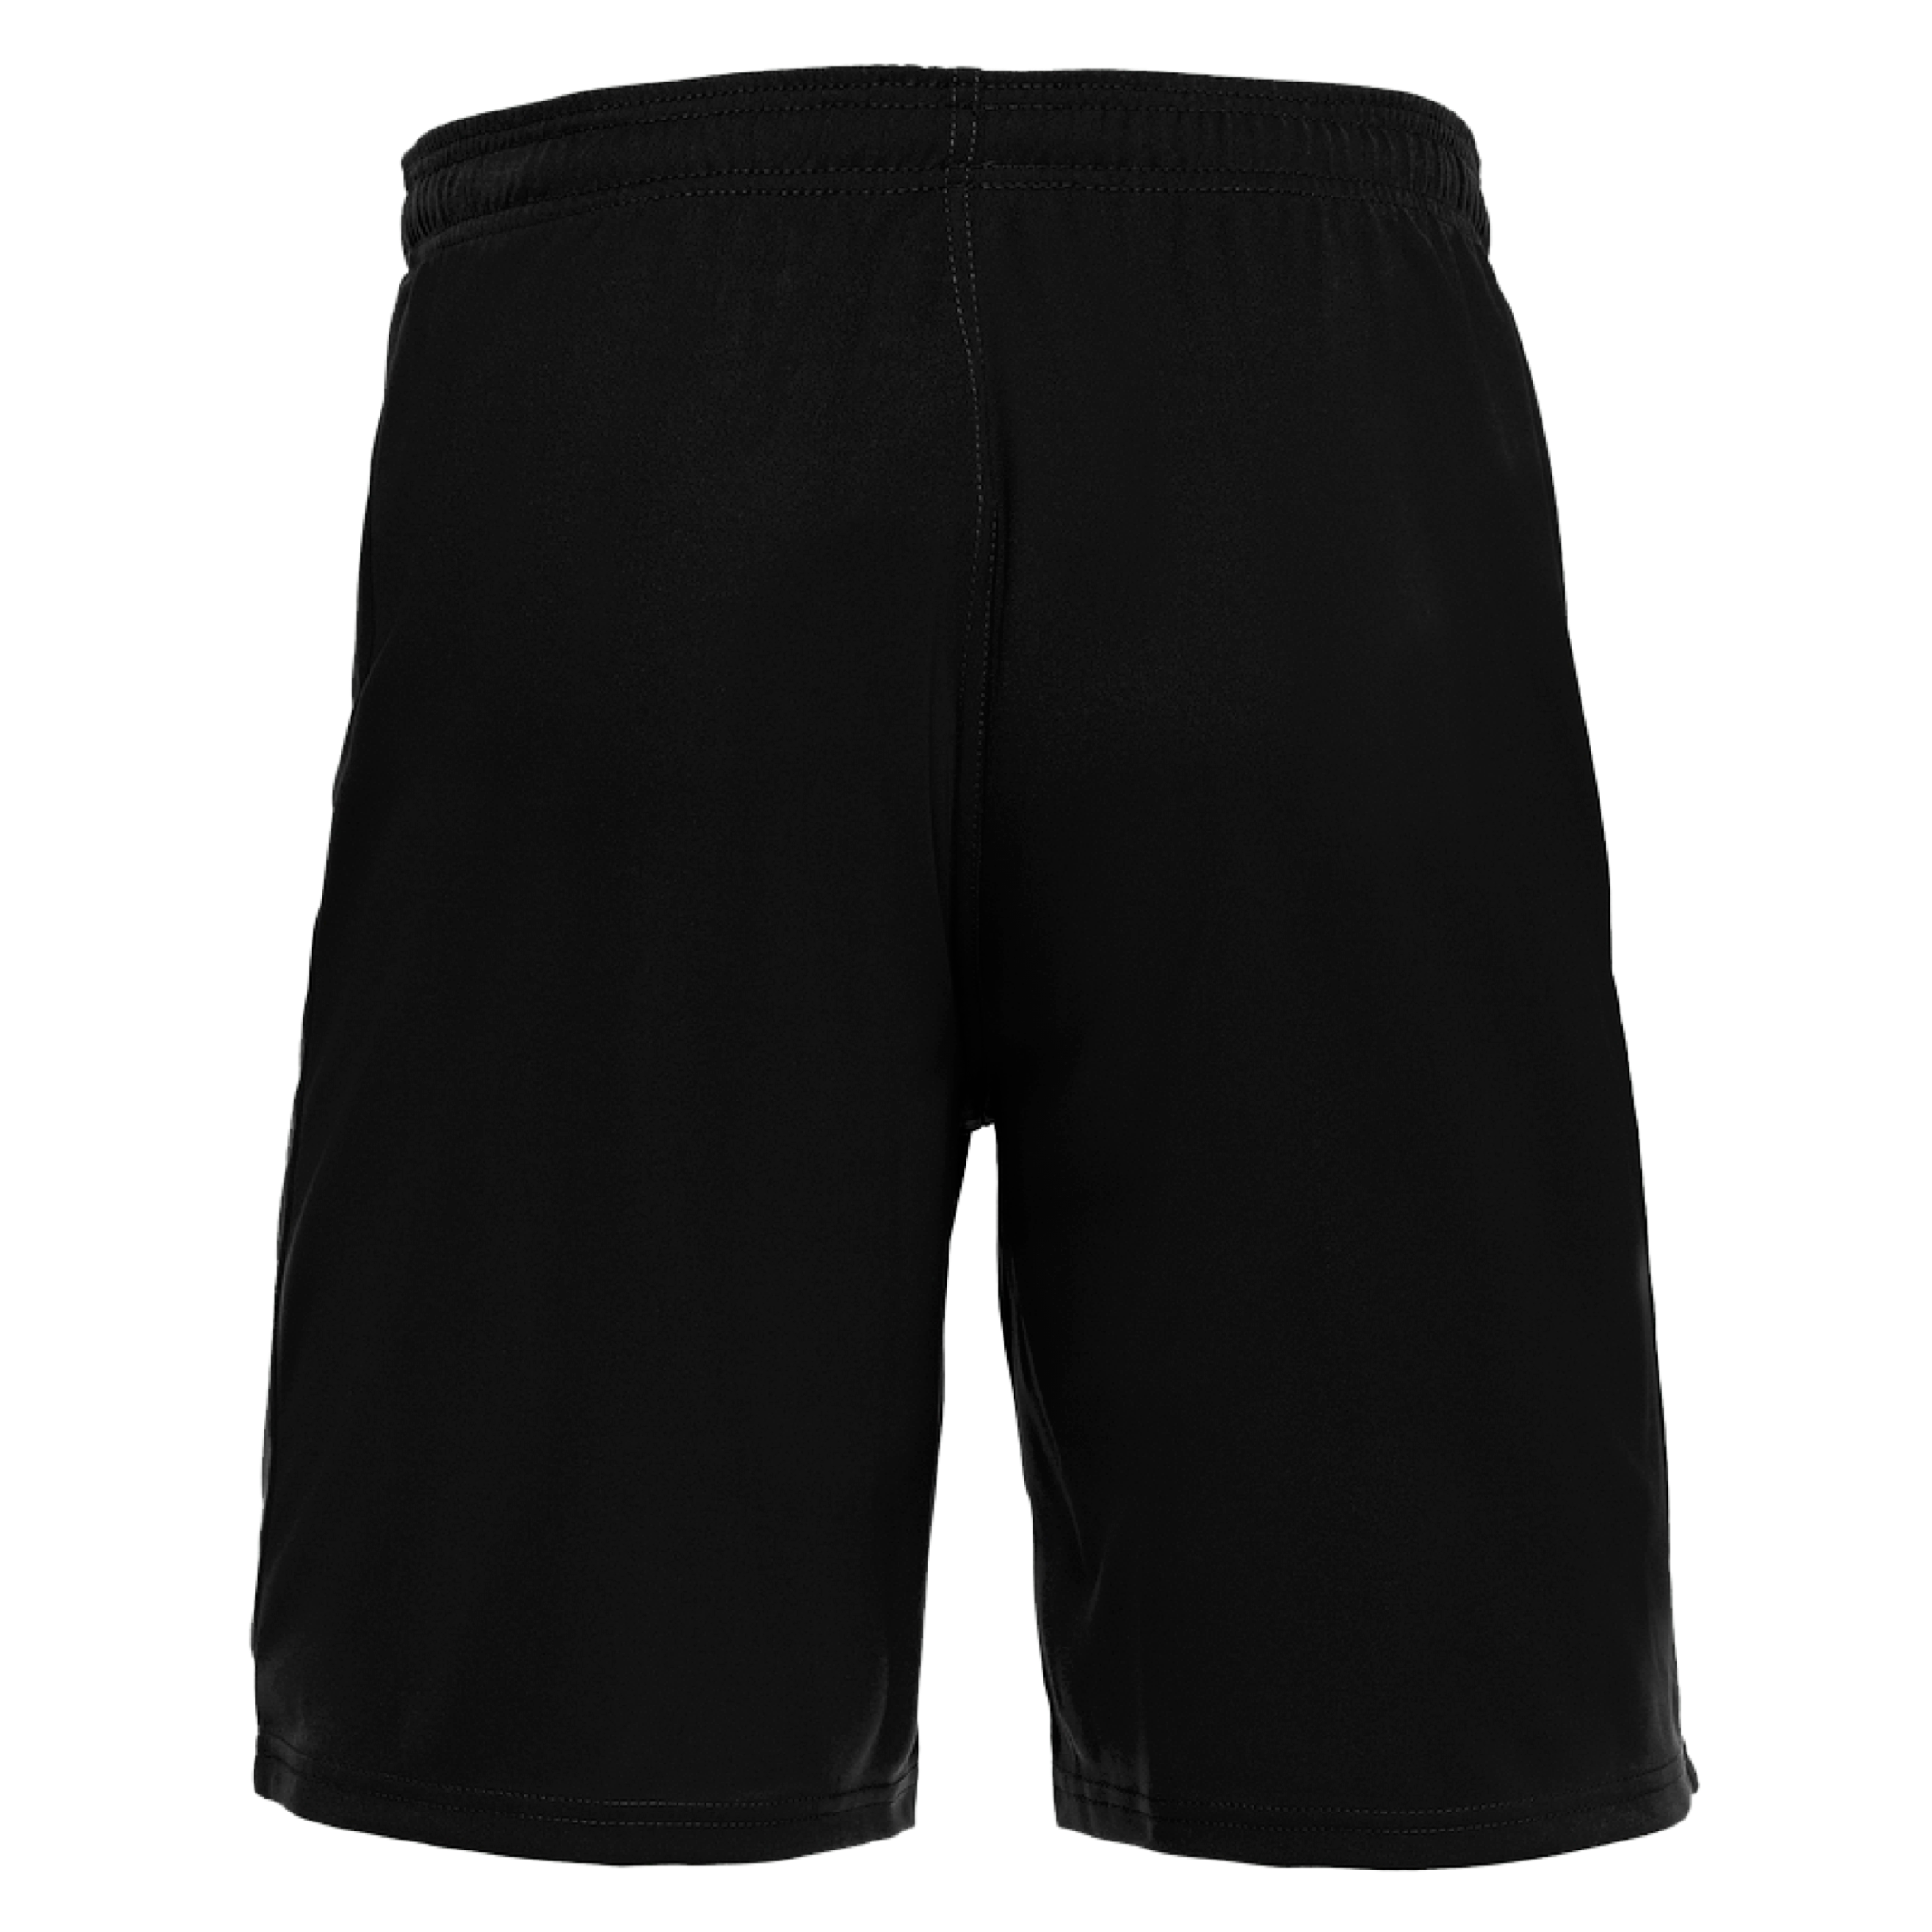 Adelaide Wanderers Shorts - Mesa (Black)